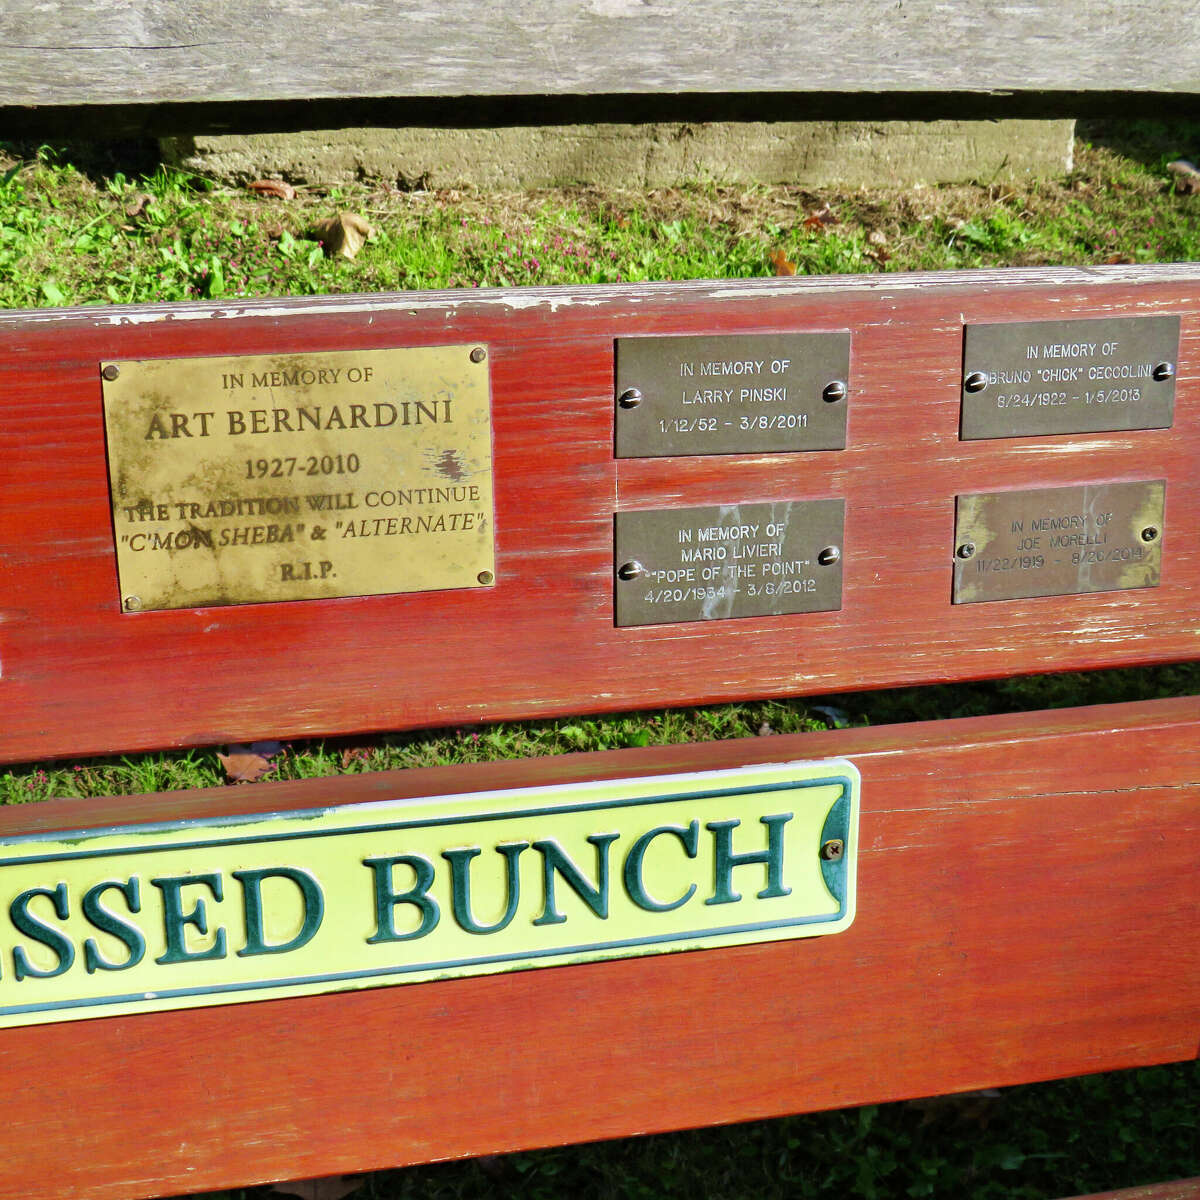 âBlessed Bunchâ bench memorializing bocce competitors at Parker Memorial Park in Branford.